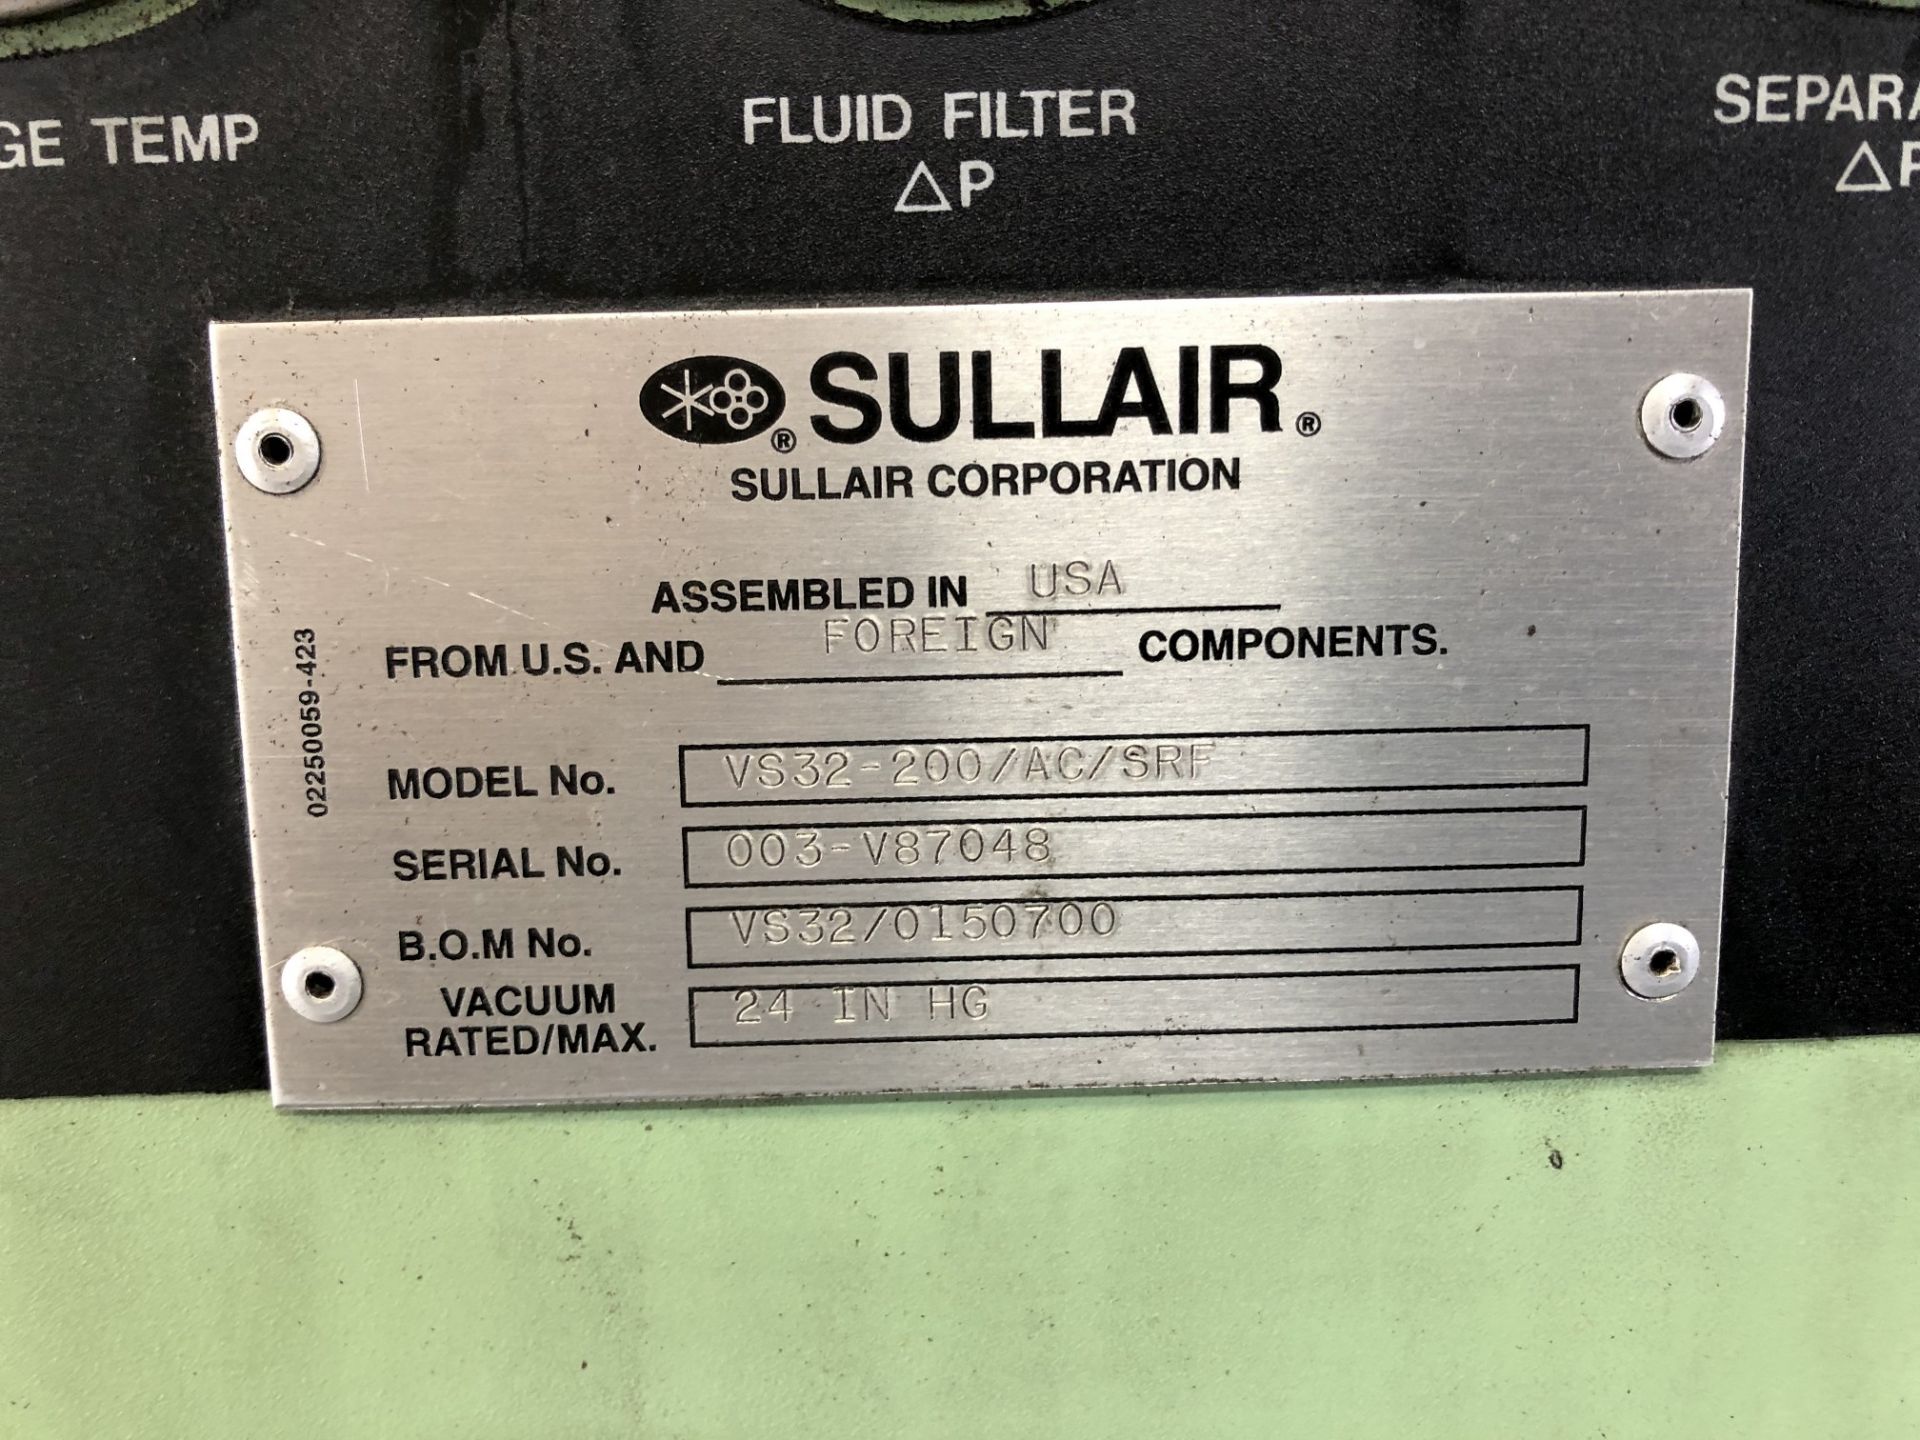 Sullair 200 HP Vacuum Pump, Model VS32-200/AC/SRF, Meter Read 90,261 Hours on 12/17/2019, S/N 003- - Image 6 of 6